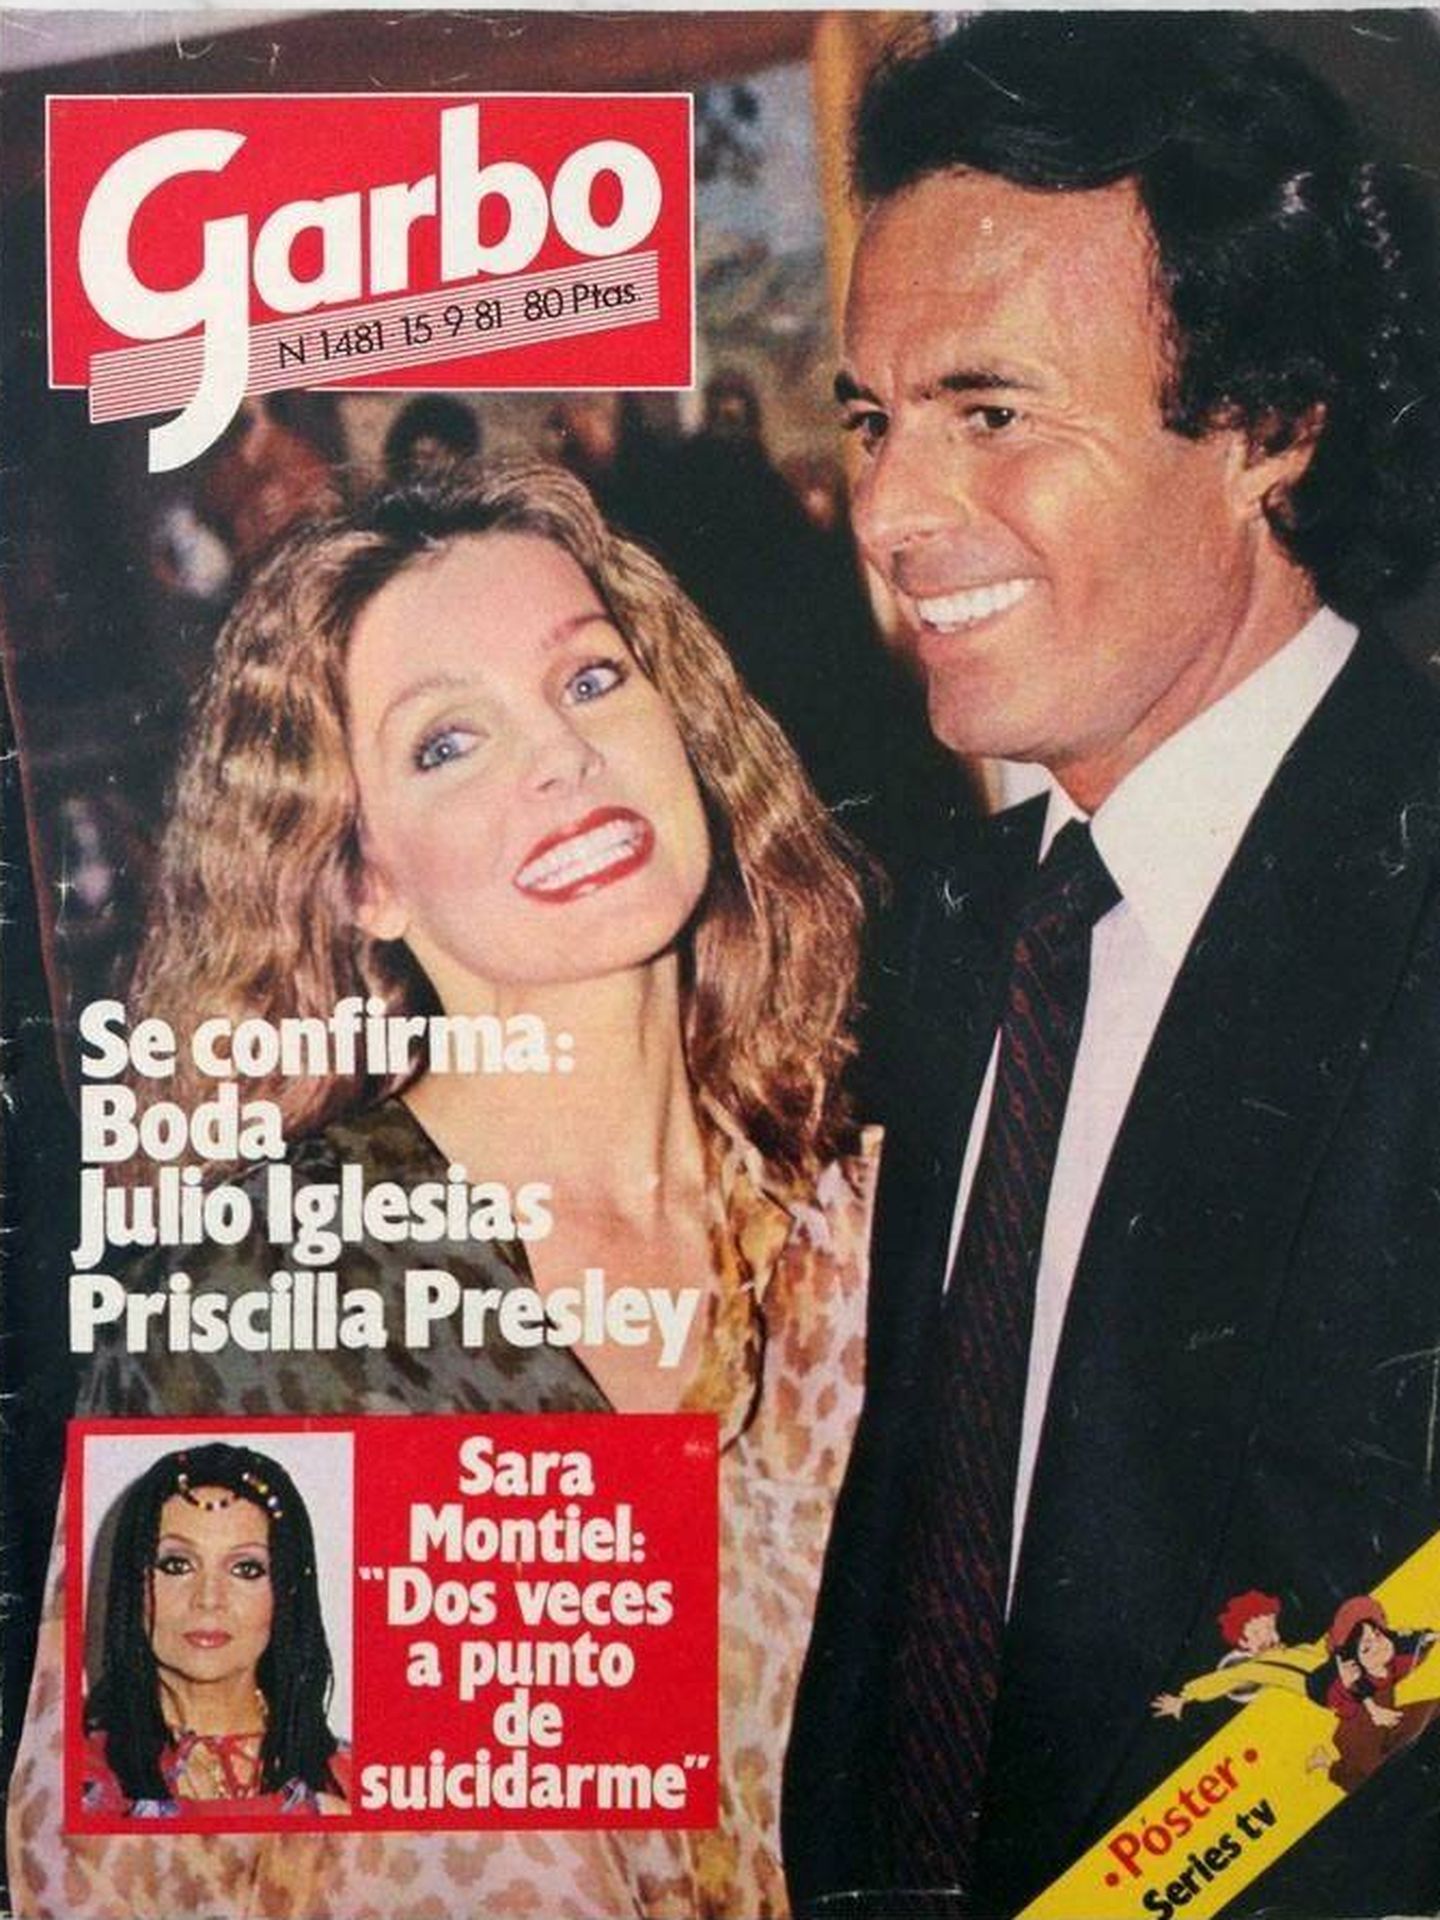 Priscilla y Julio, en la portada de una revista de la época. ('Garbo')